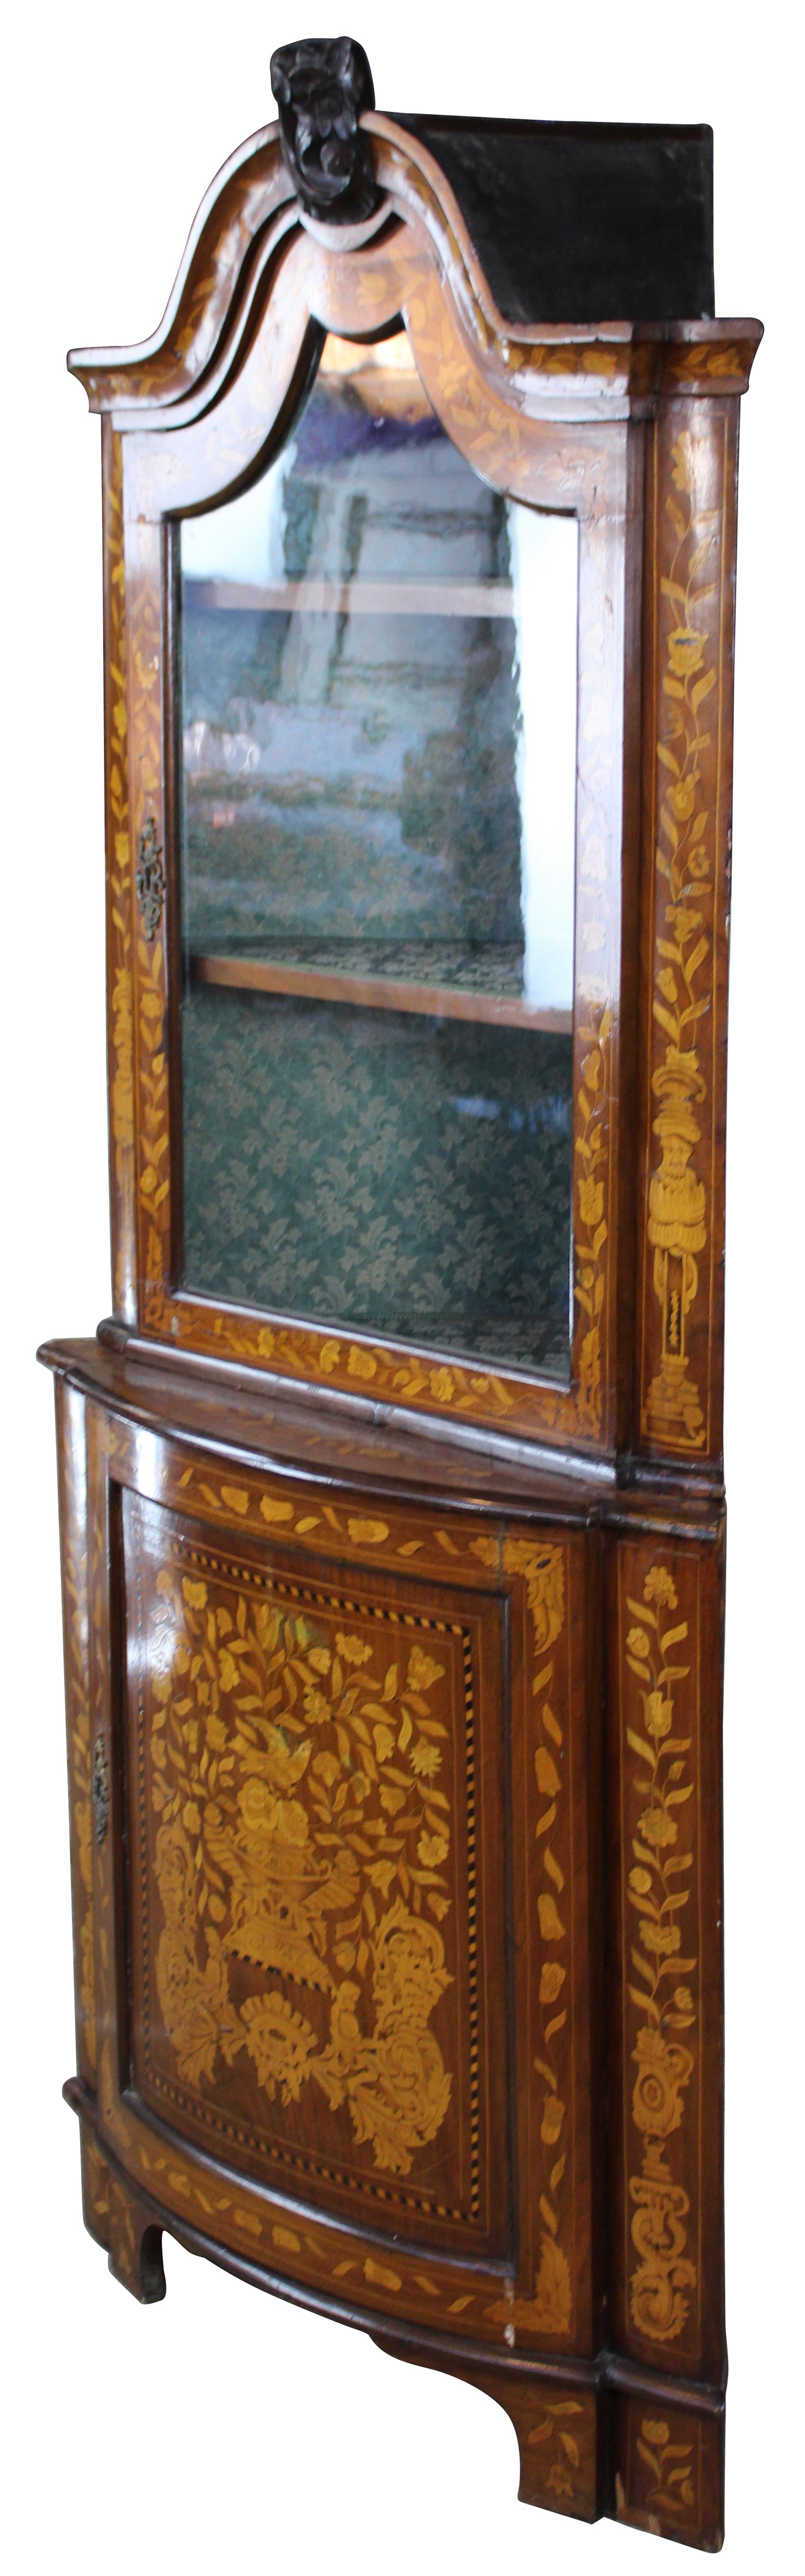 antique corner cabinet for sale